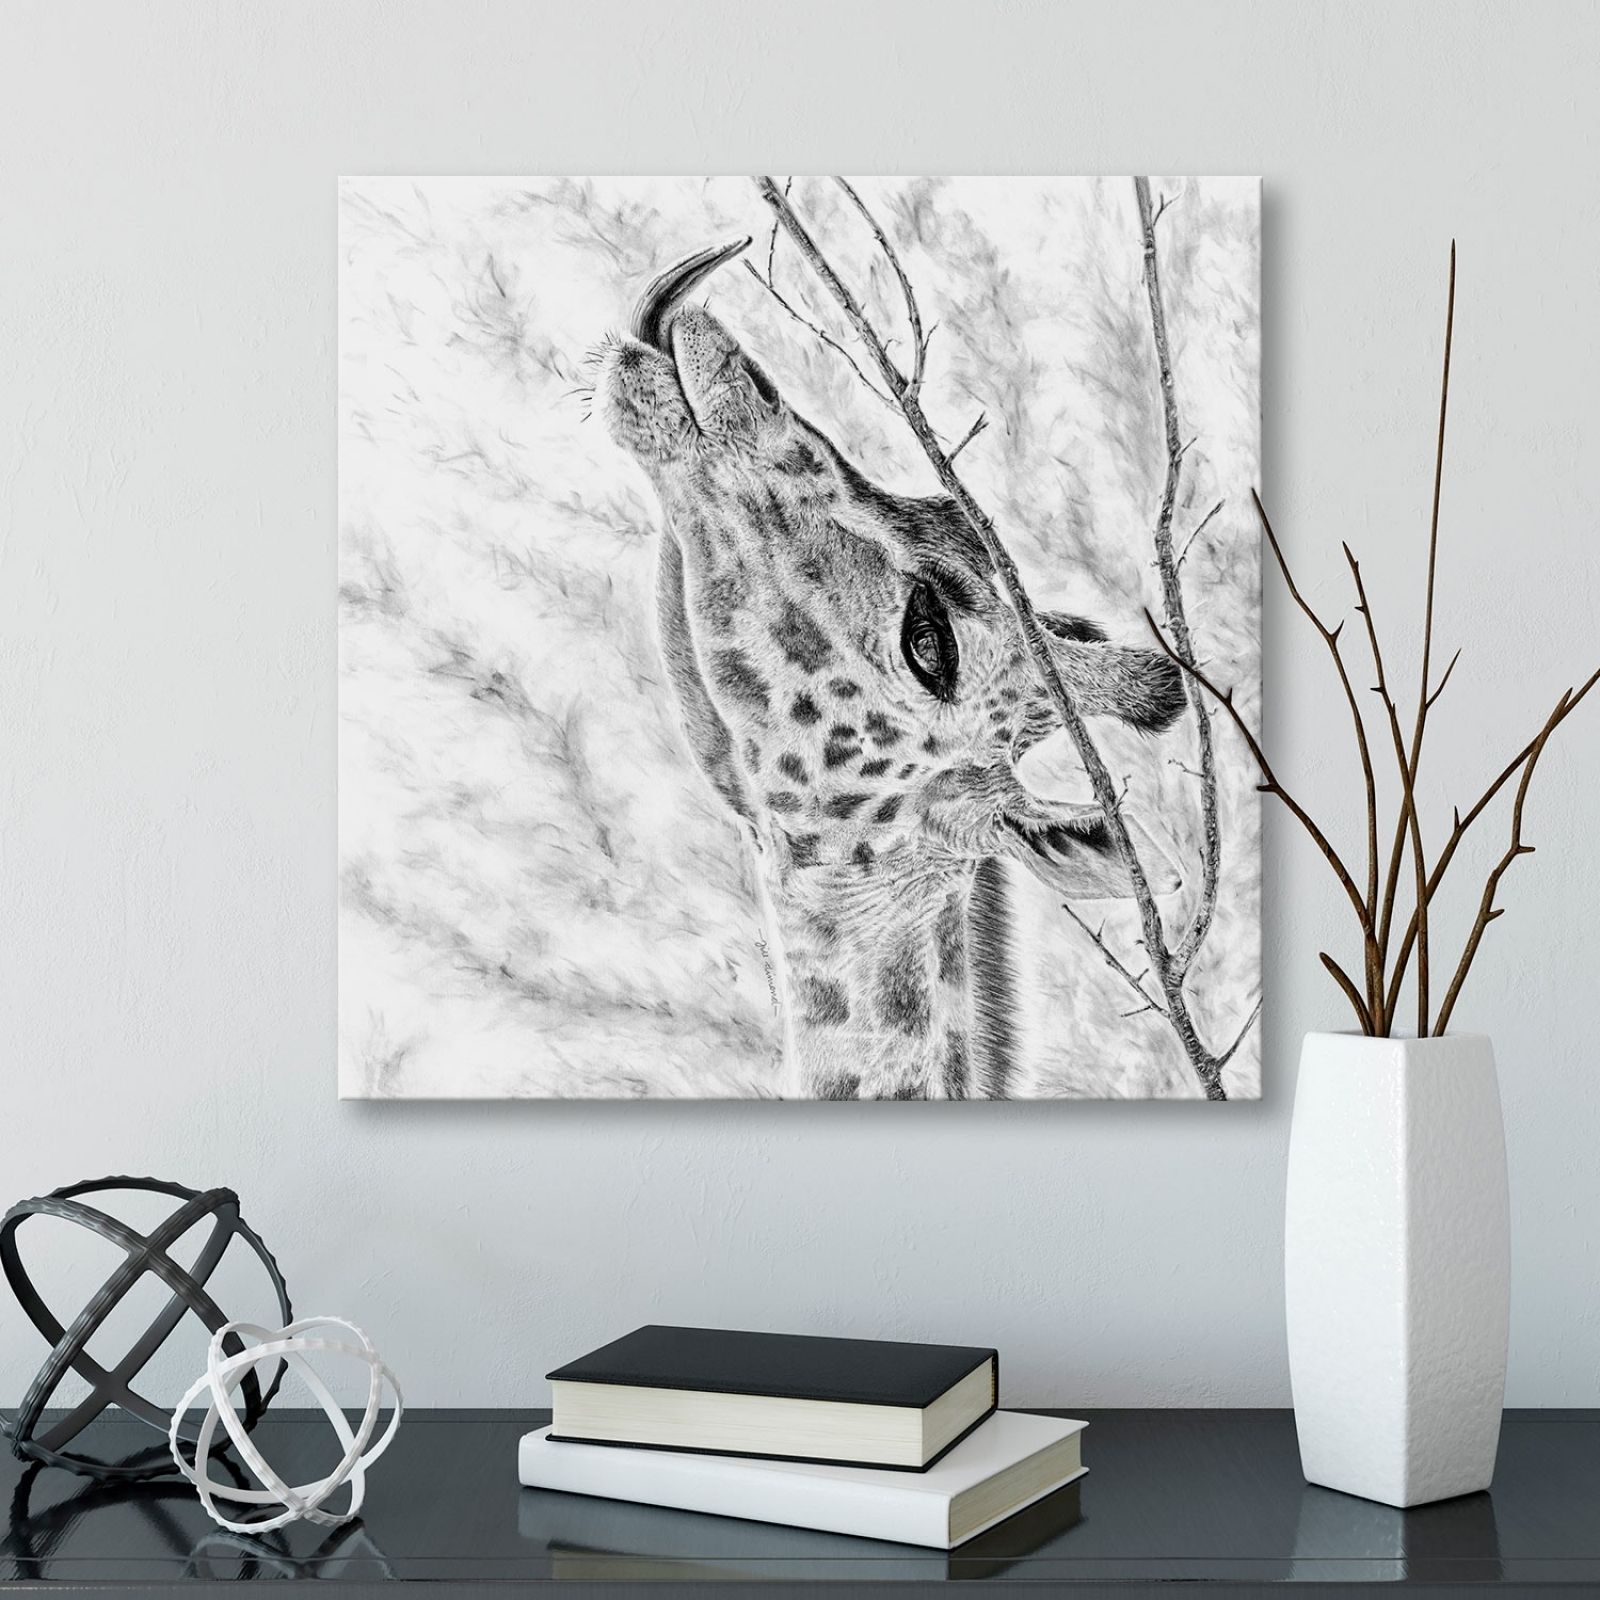 Giraffe Canvas Print Wall Art – Jill Dimond Art | Jill Dimond Art Pertaining To Giraffe Canvas Wall Art (View 16 of 20)